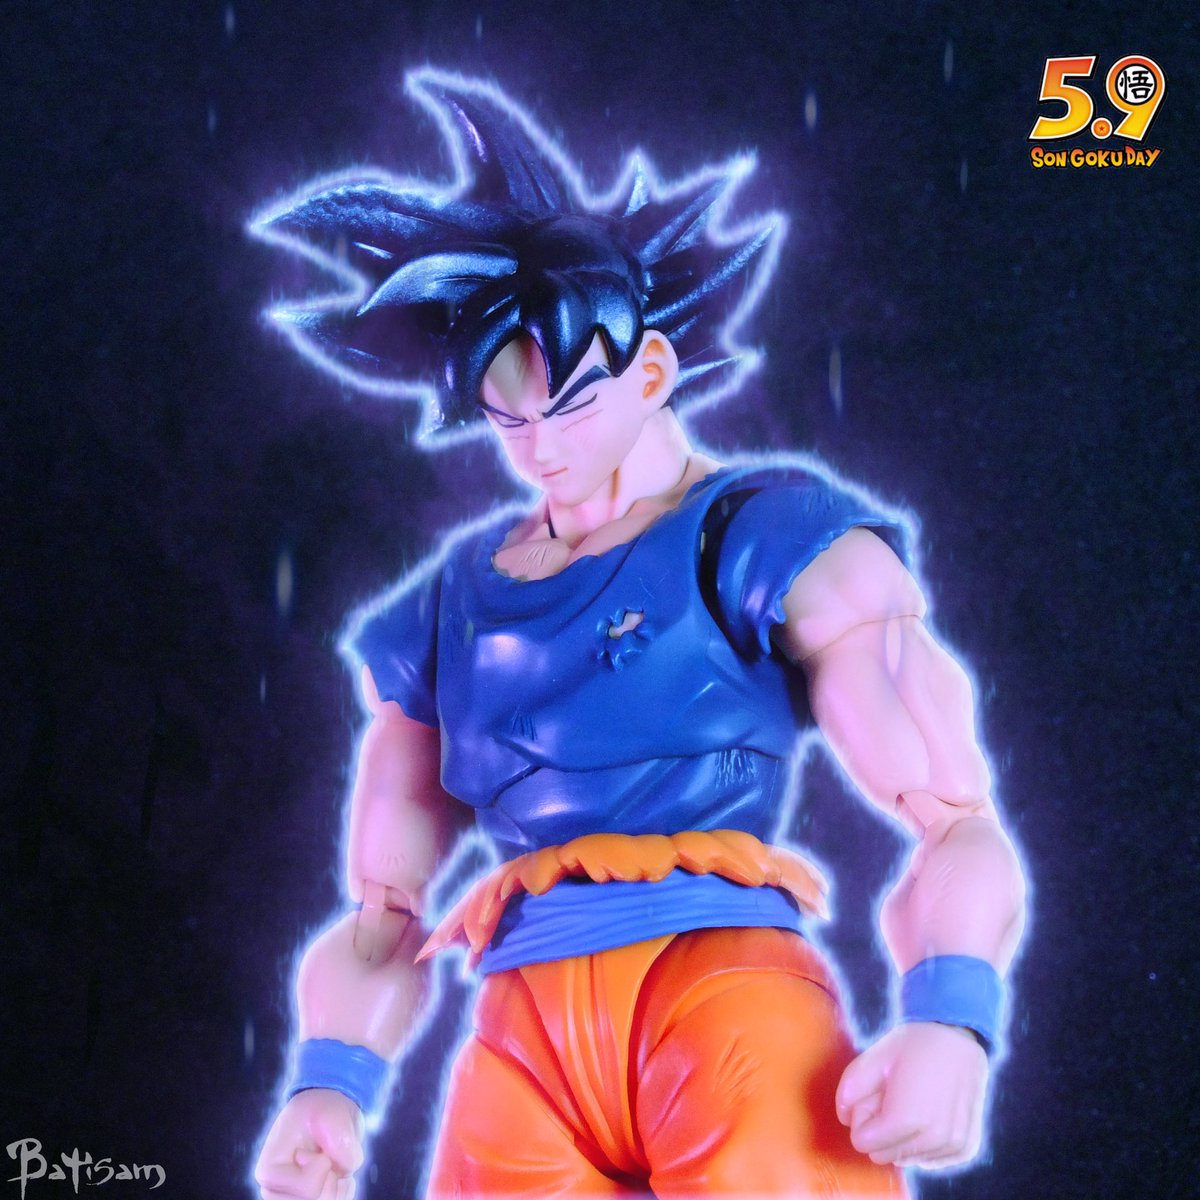 Happy Goku 🐉 Day 🎉#dragonball_nations  @instamashii @TamashiiNations #goku #GokuDay #supersaiyan #dragonballsuper #vegeta #dbs #dbz  #toyphotography #toyphotoawards #toyslagram #ultrainstinctgoku #DragonBallZ #toyartistry #poptoyphotos #shf_db #shfiguarts #actionfigures